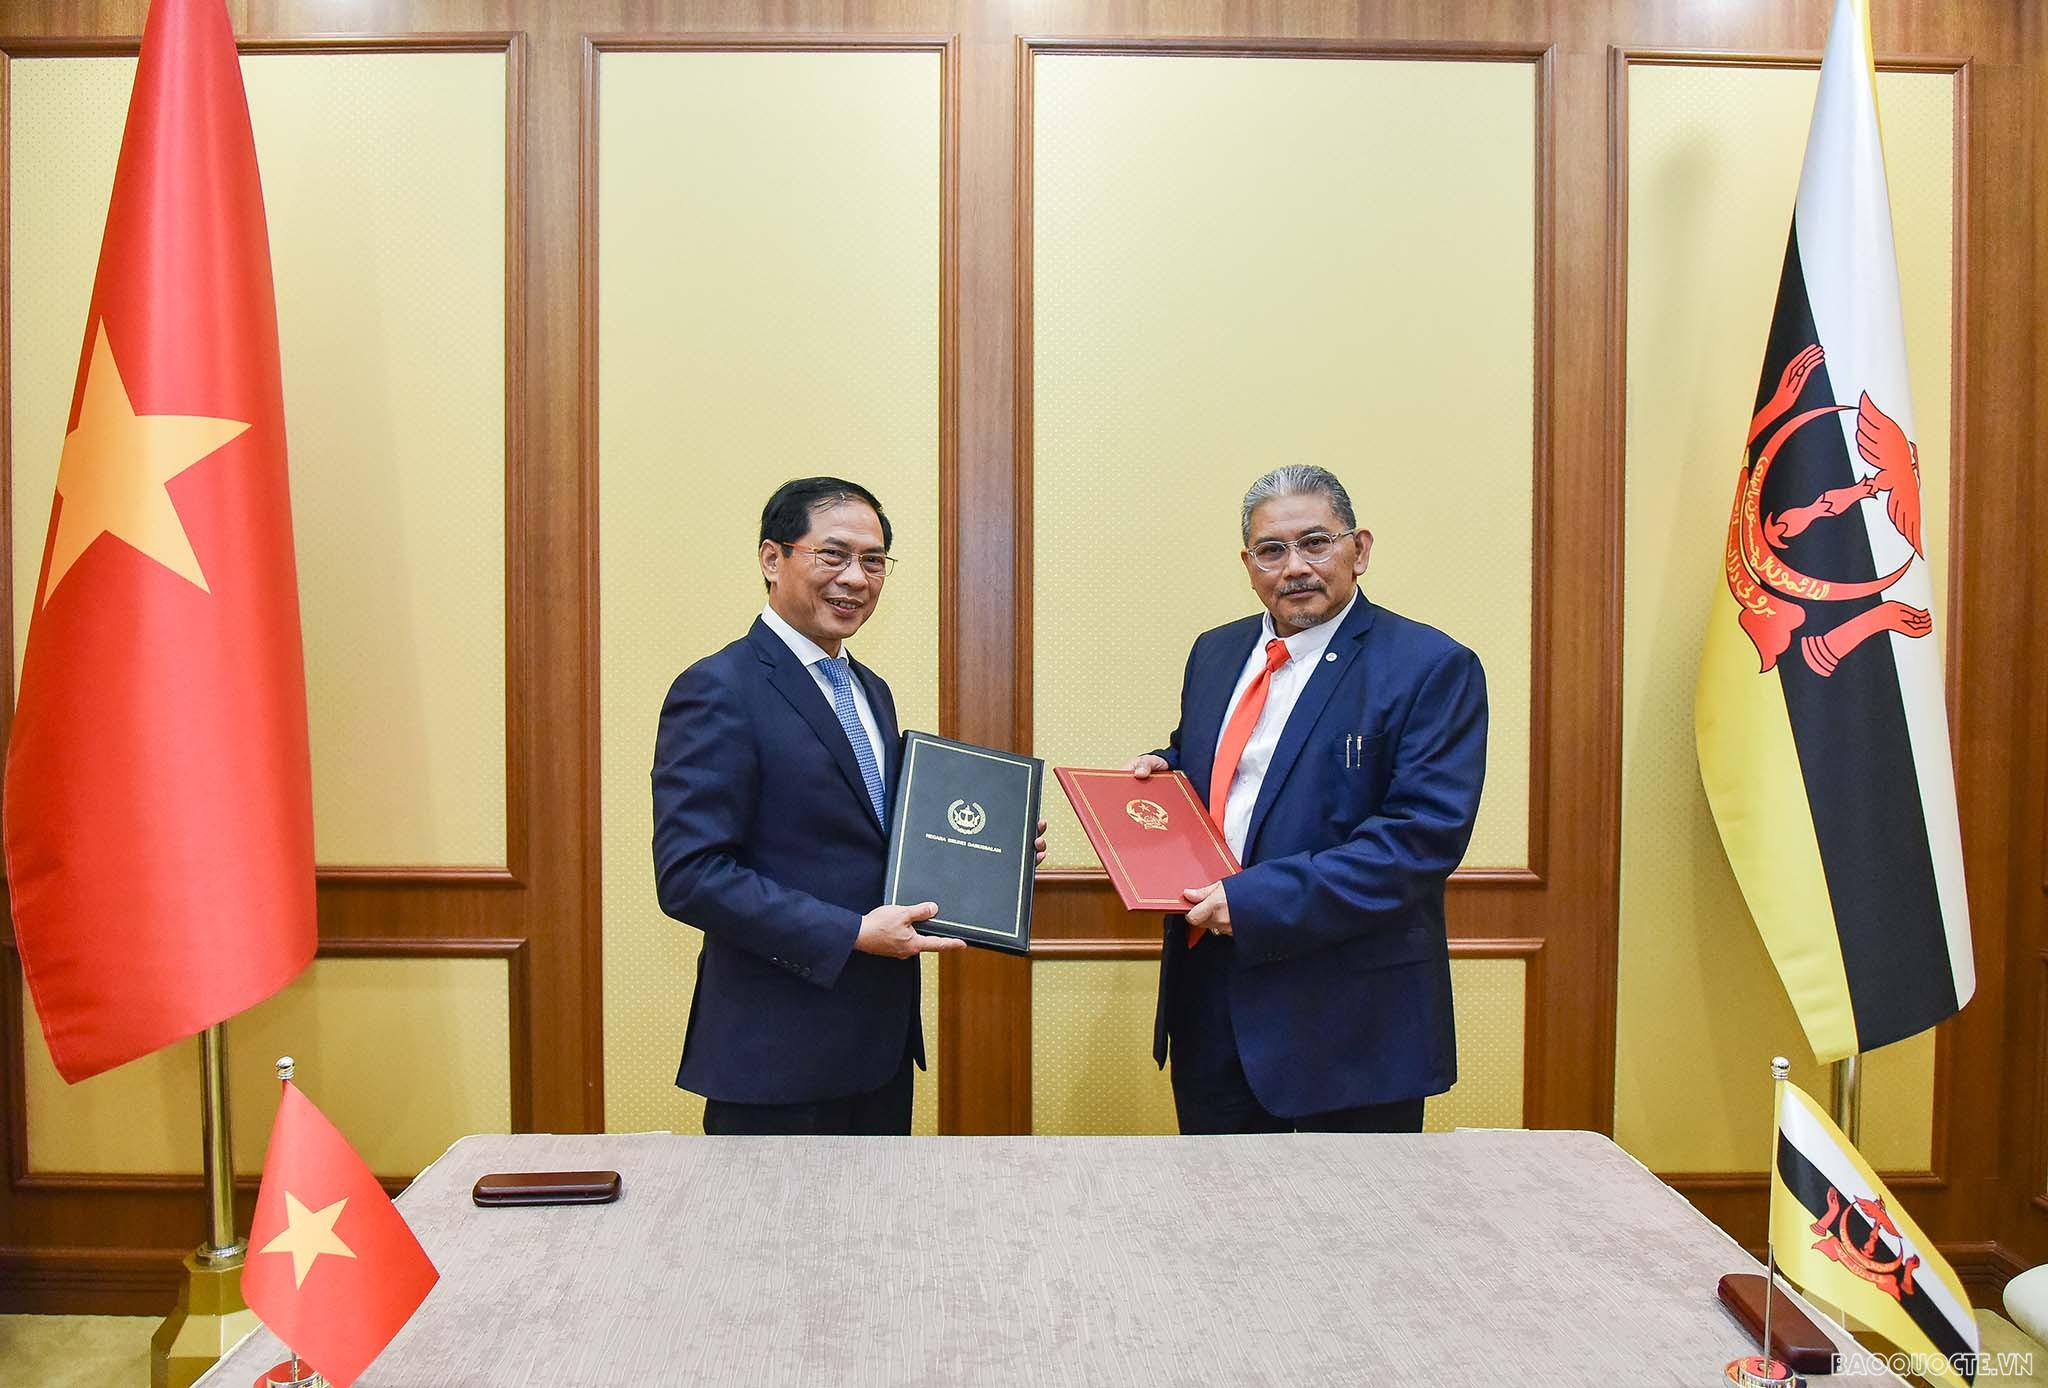 Ngay sau kỳ họp, hai Bộ trưởng Ngoại giao đã ký Biên bản thỏa thuận Kỳ họp lần thứ 2 Ủy ban hỗn hợp về Hợp tác song phương Việt Nam-Brunei Darussalam.